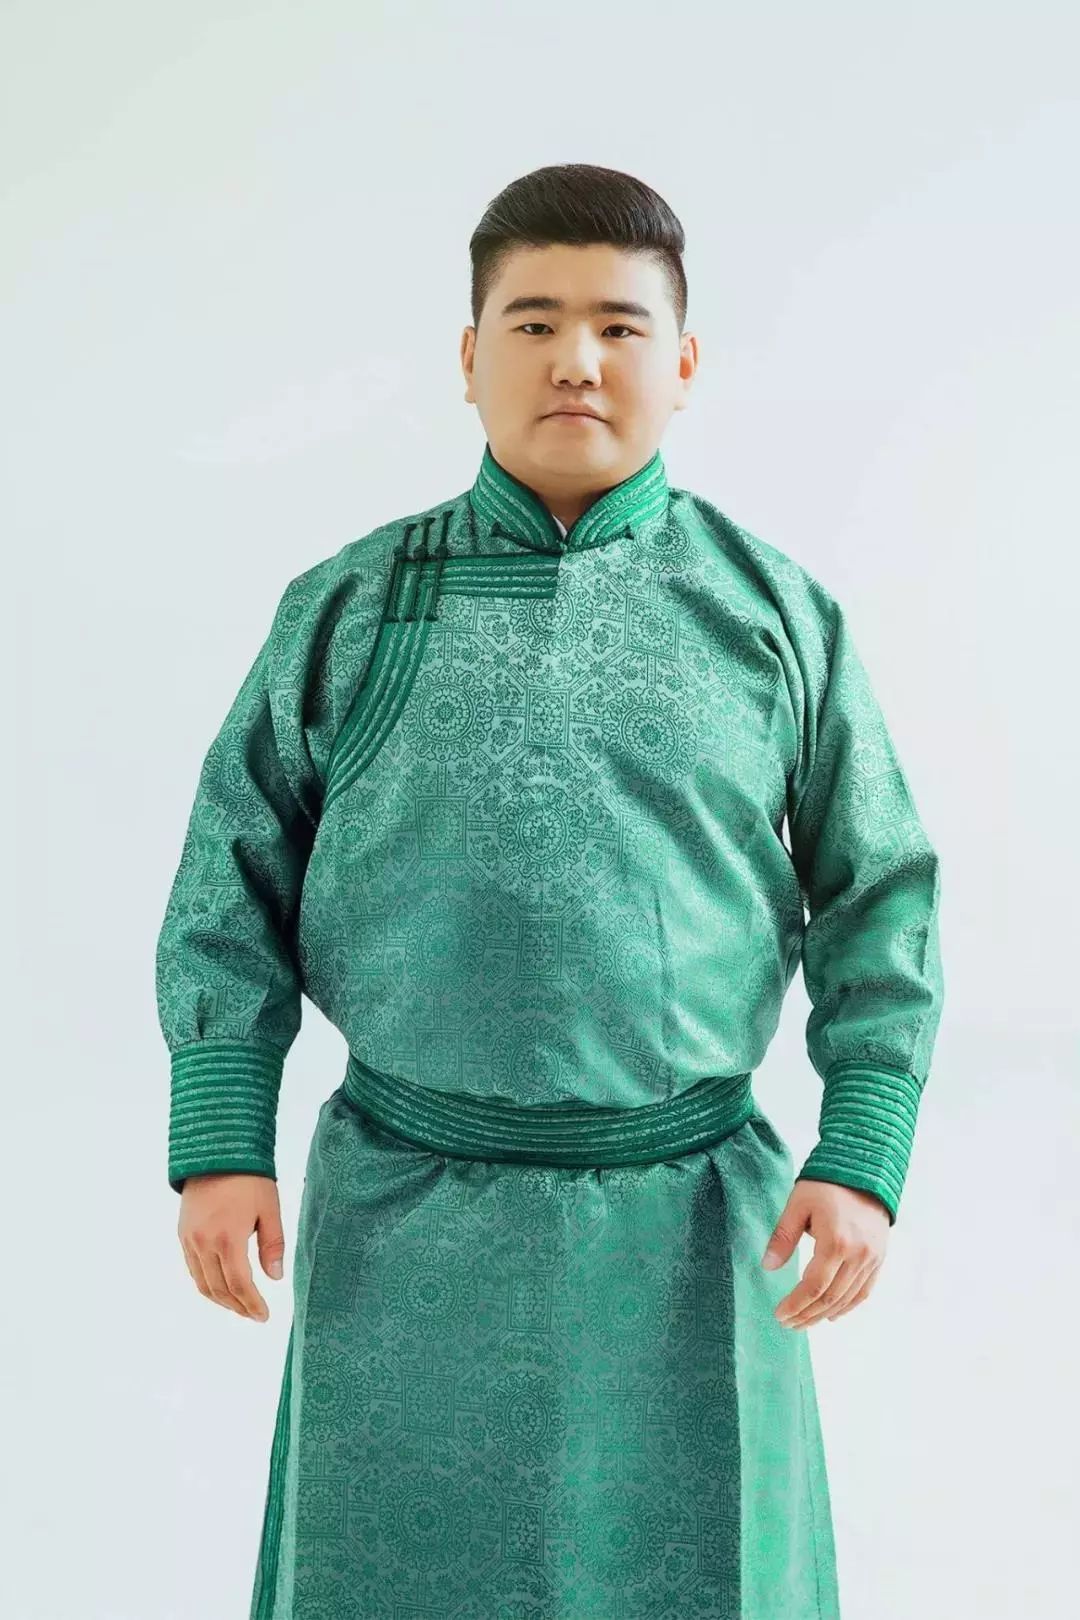 蒙古族帅哥道力根在国际声乐大赛上获得季军